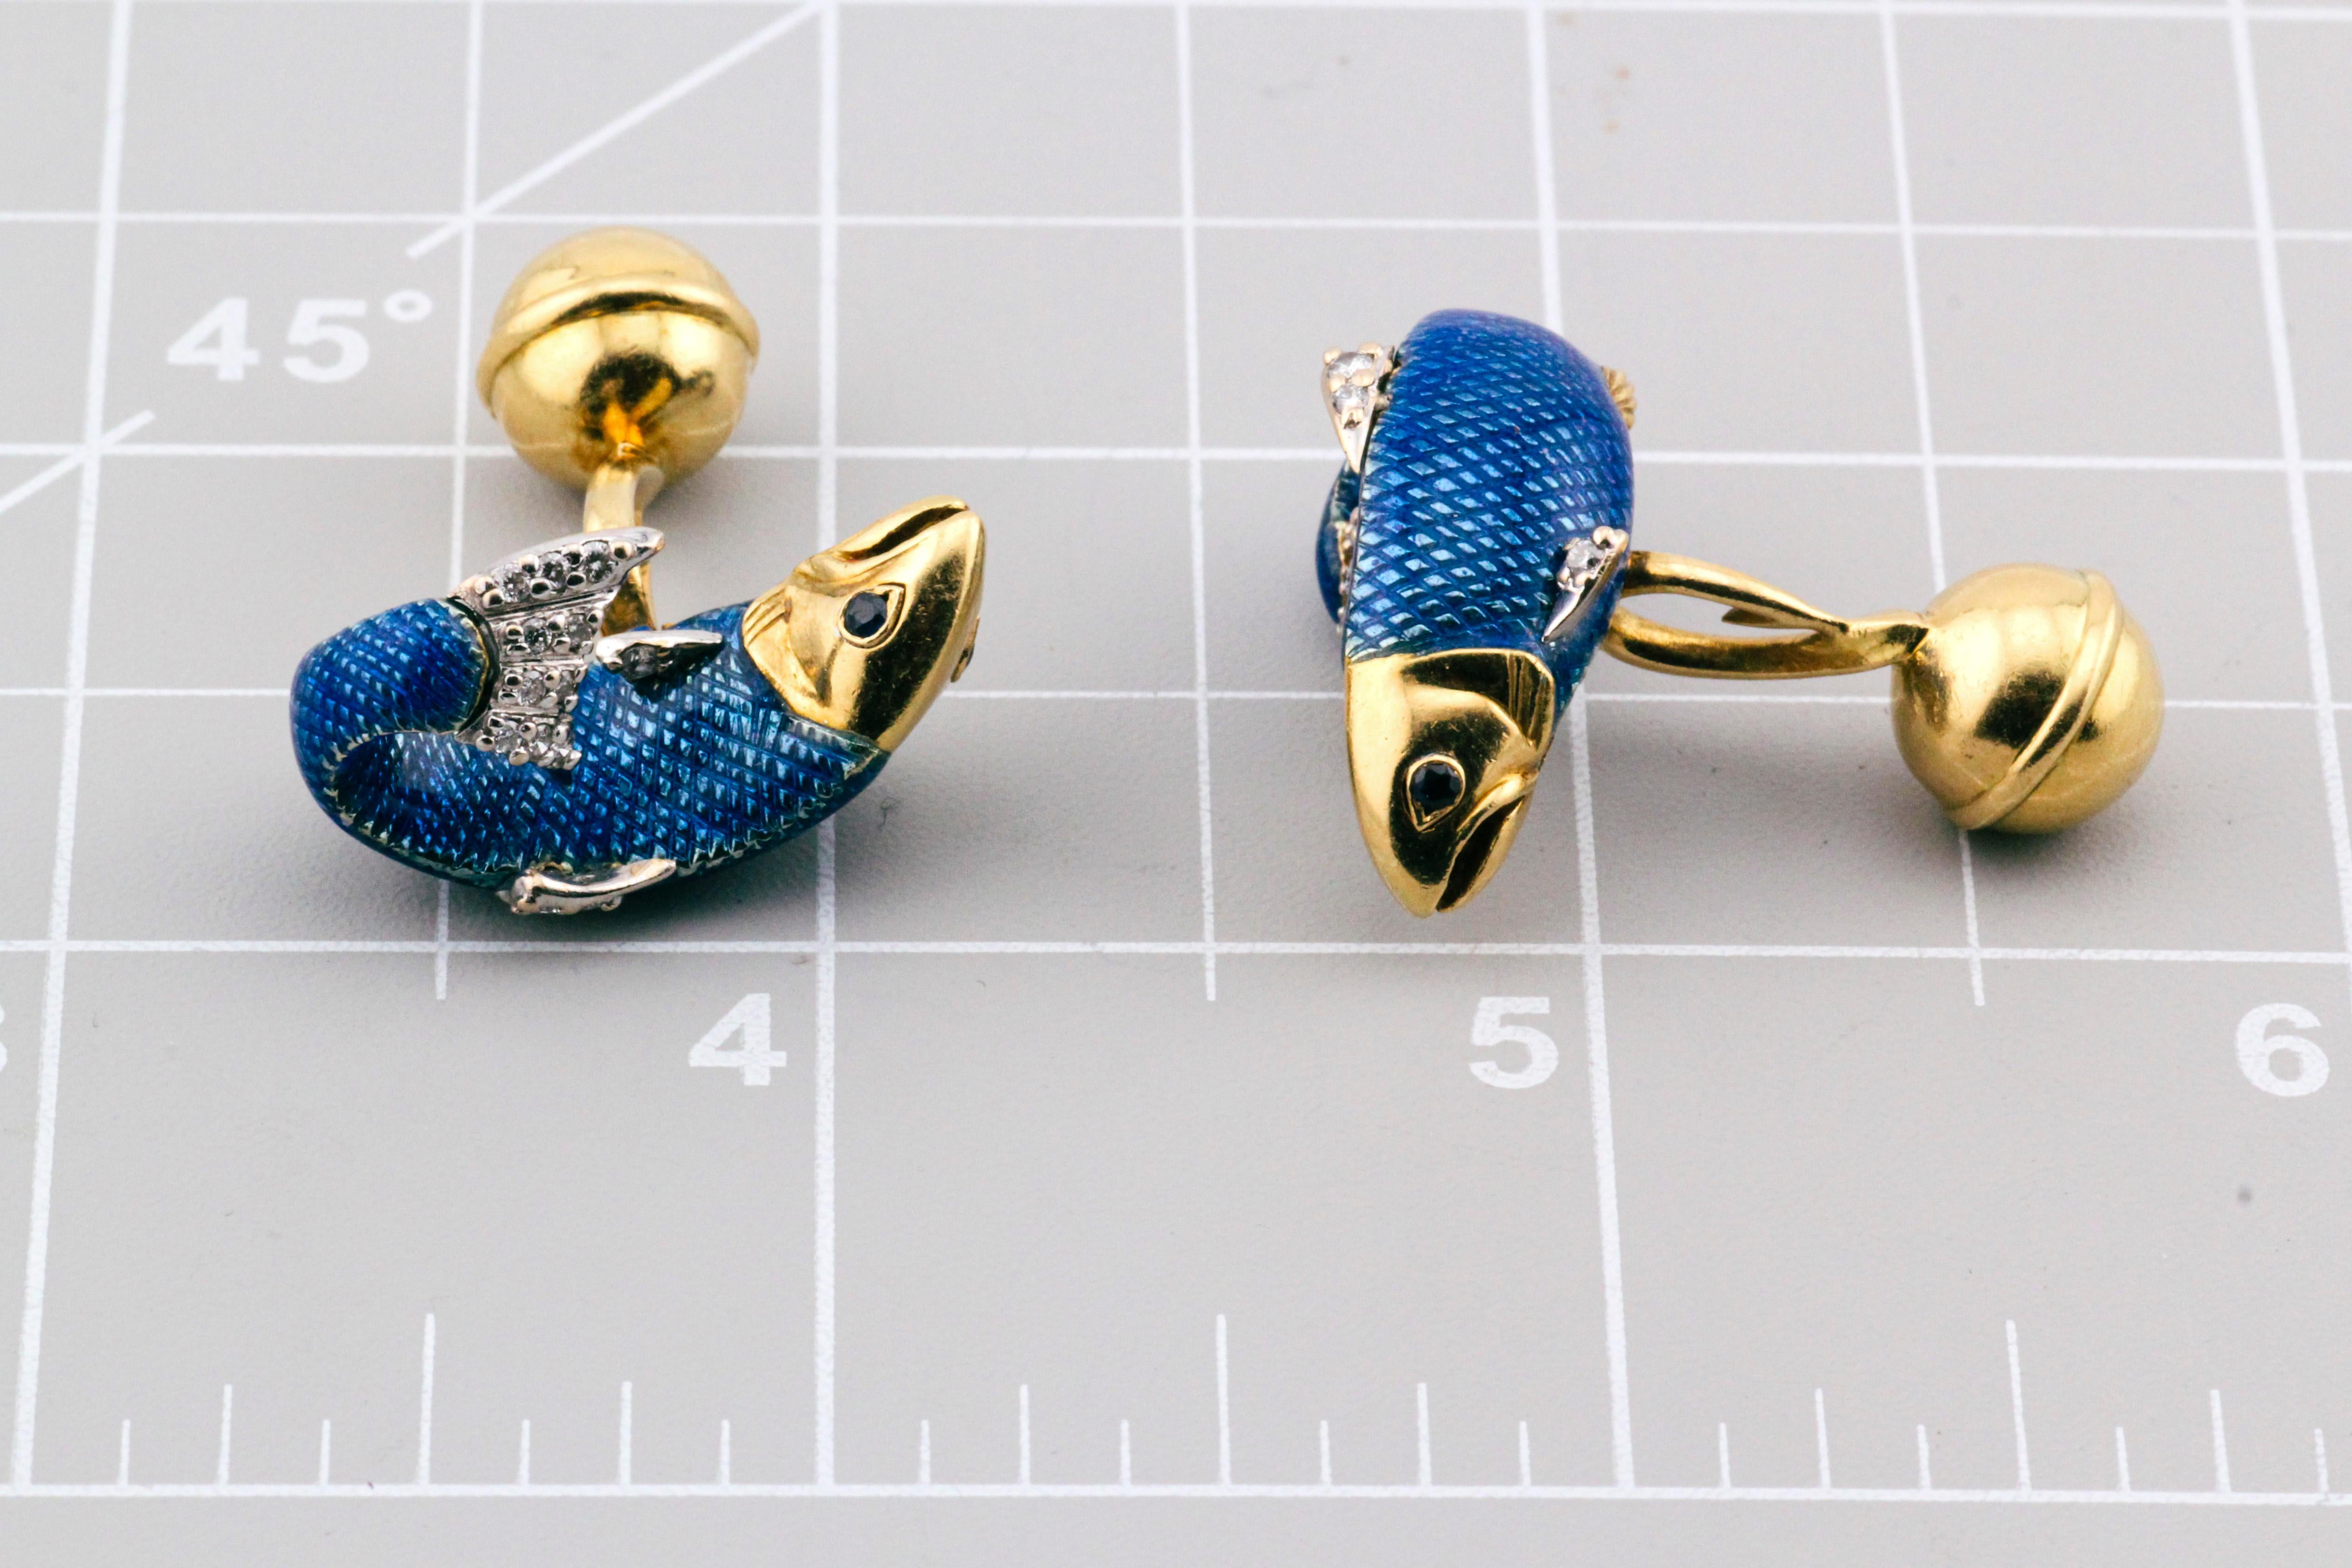 Enthüllung eines aquatischen Schatzes: Tiffany & Co. Manschettenknöpfe mit Diamant, Saphir und Emaille-Fisch

Ein Hauch von aquatischer Laune und zeitloser Eleganz mit diesen bezaubernden Fischmanschettenknöpfen von Tiffany & Co. Diese